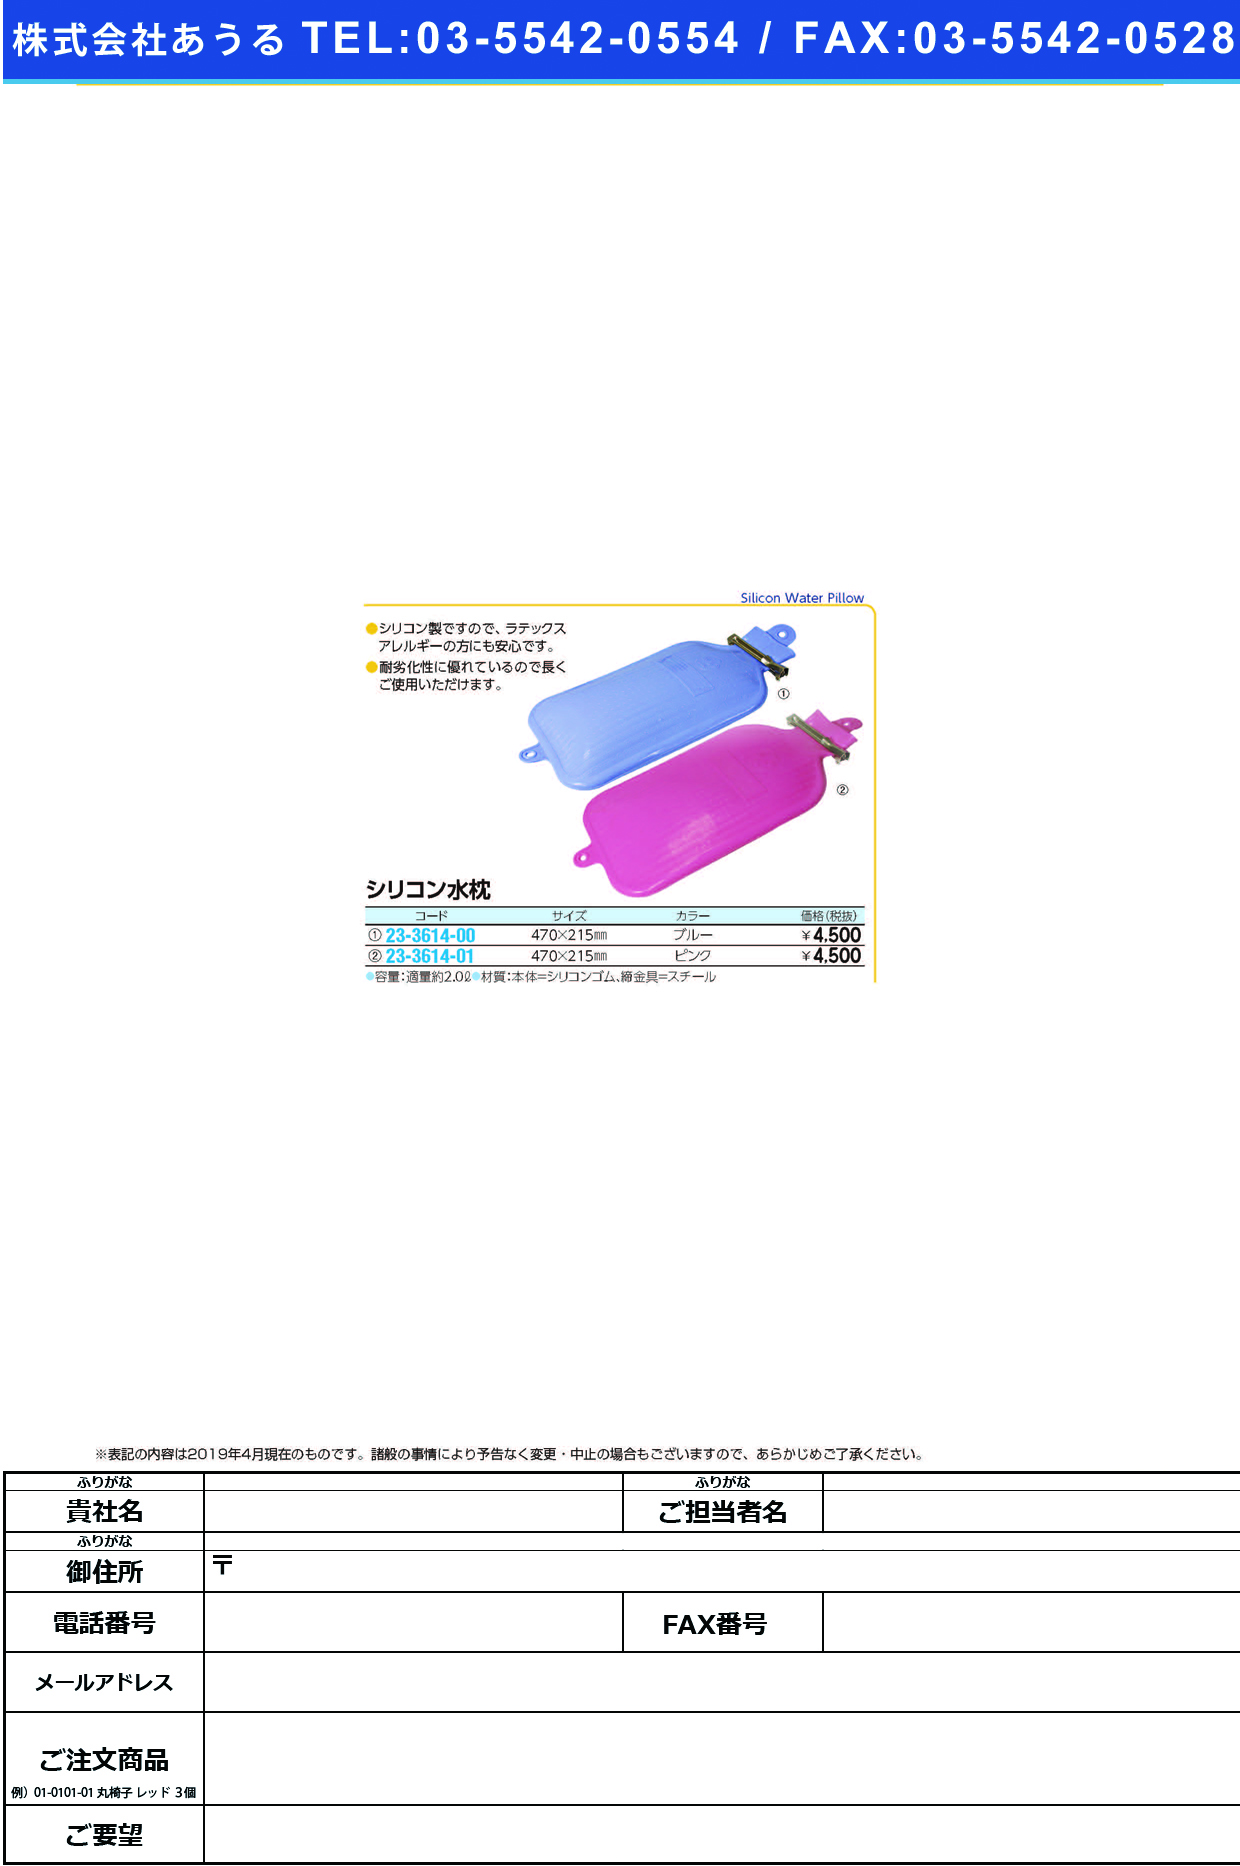 (23-3614-00)シリコン水枕 WPS-K01B(ﾌﾞﾙｰ) ｼﾘｺﾝﾐｽﾞﾏｸﾗ【1個単位】【2019年カタログ商品】